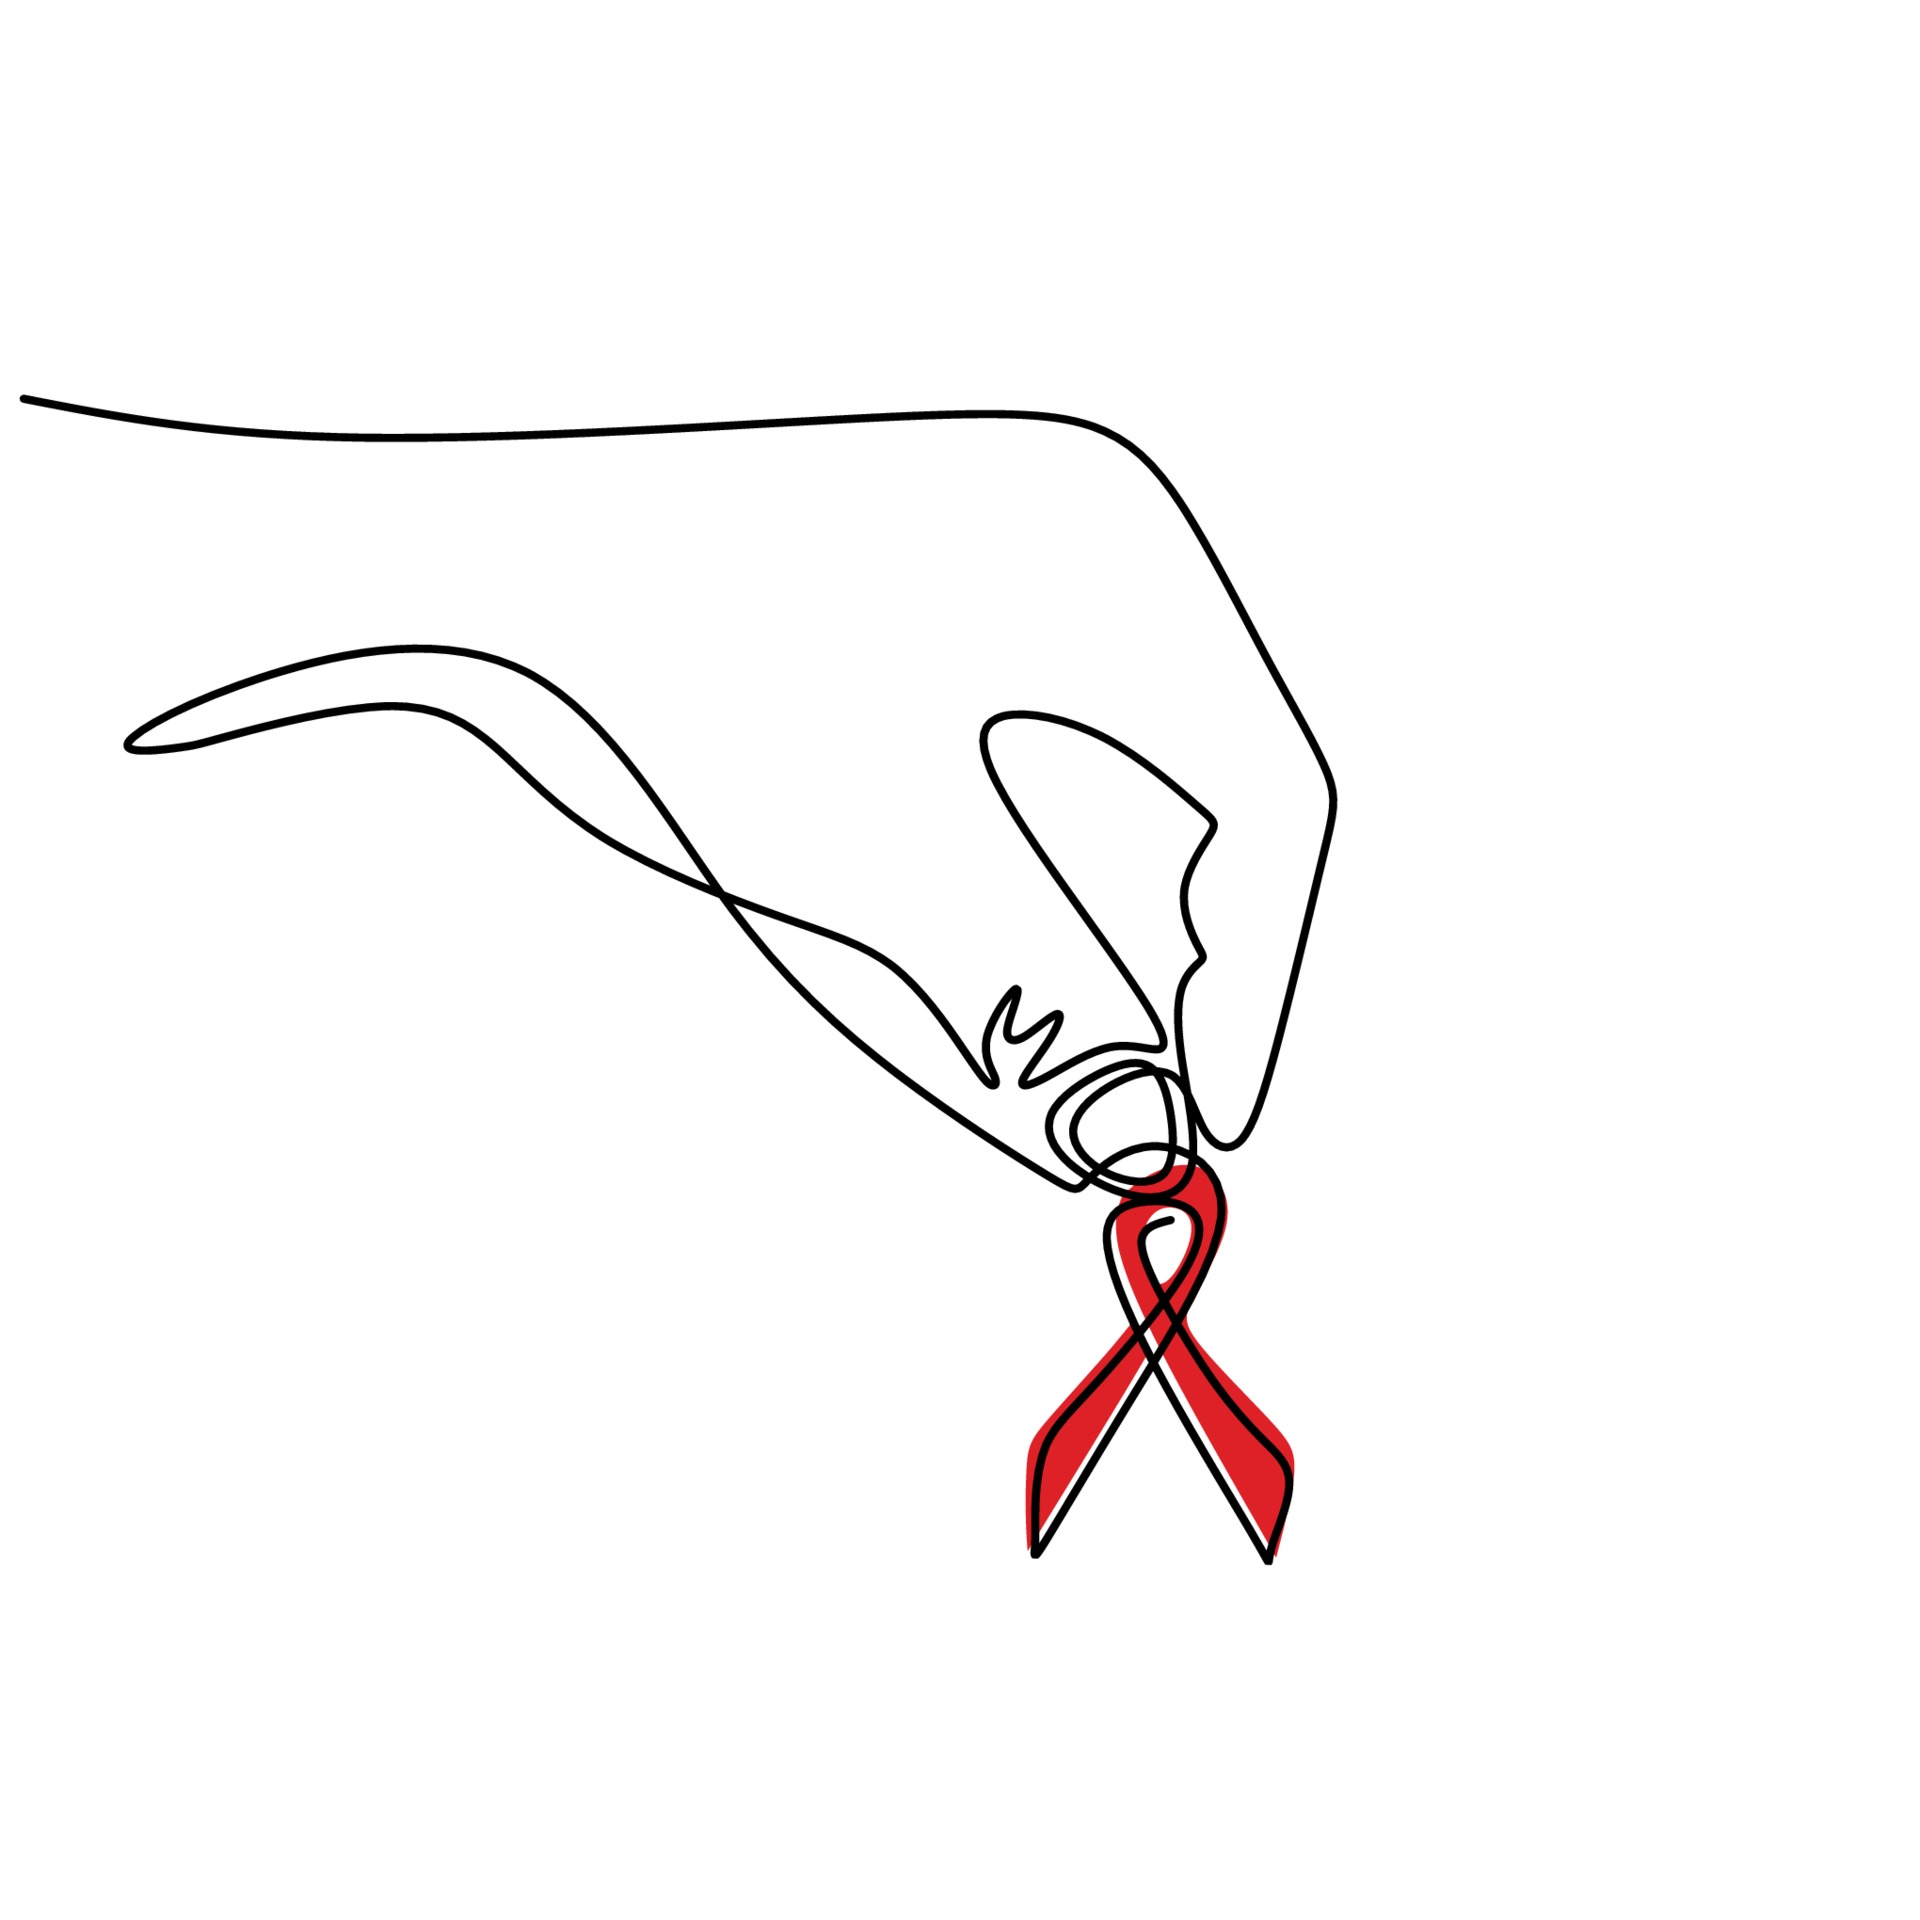 continua una riga di nastro rosso per badge. Giornata mondiale contro l'HIV  1 dicembre. simbolo